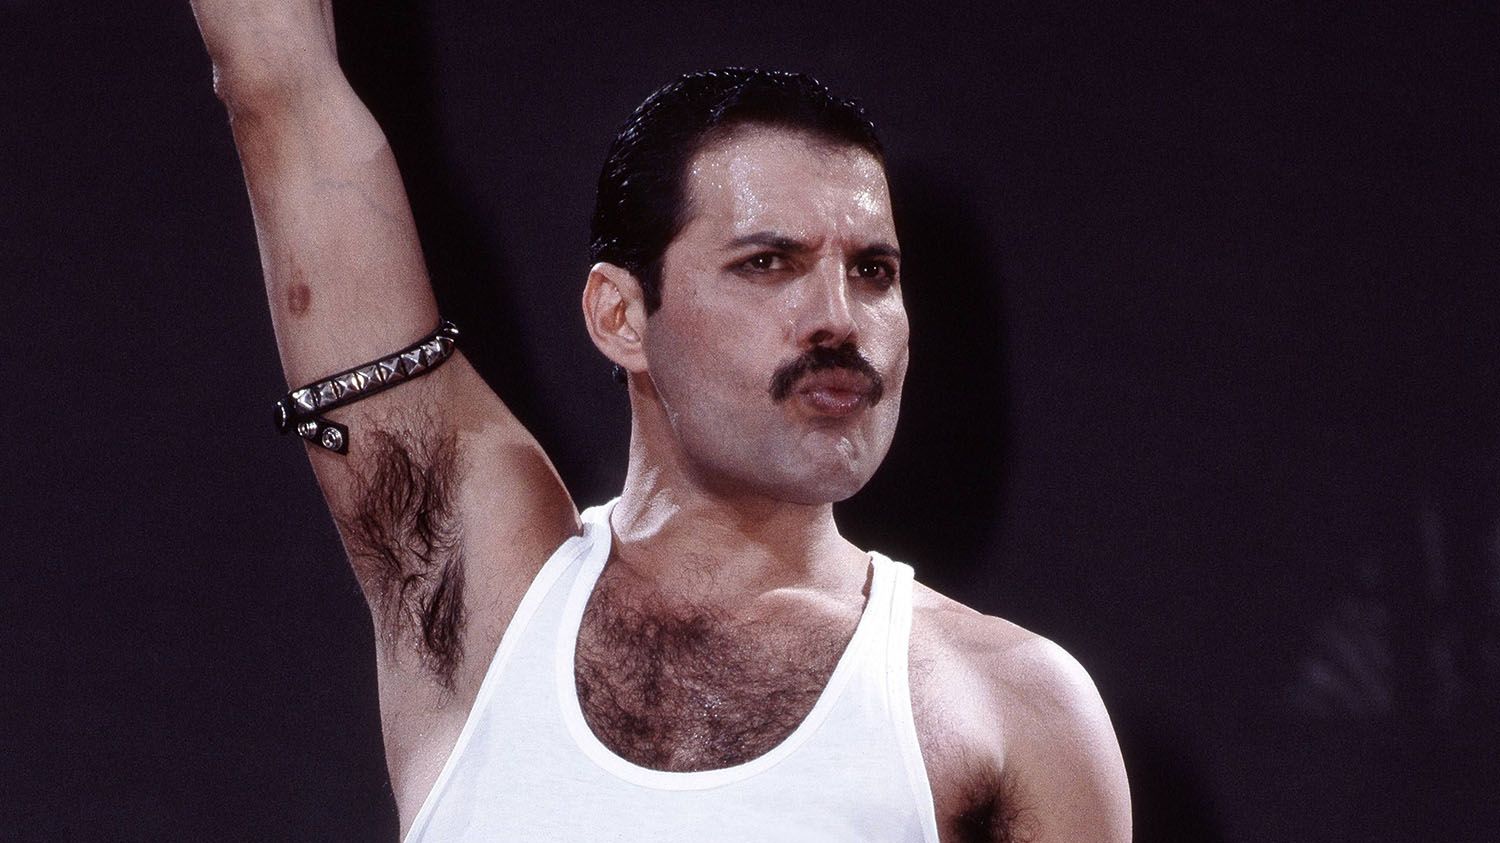 Pieptănul cu care Freddie Mercury își aranja mustața s-a vândut la licitație contra unei sume colosale